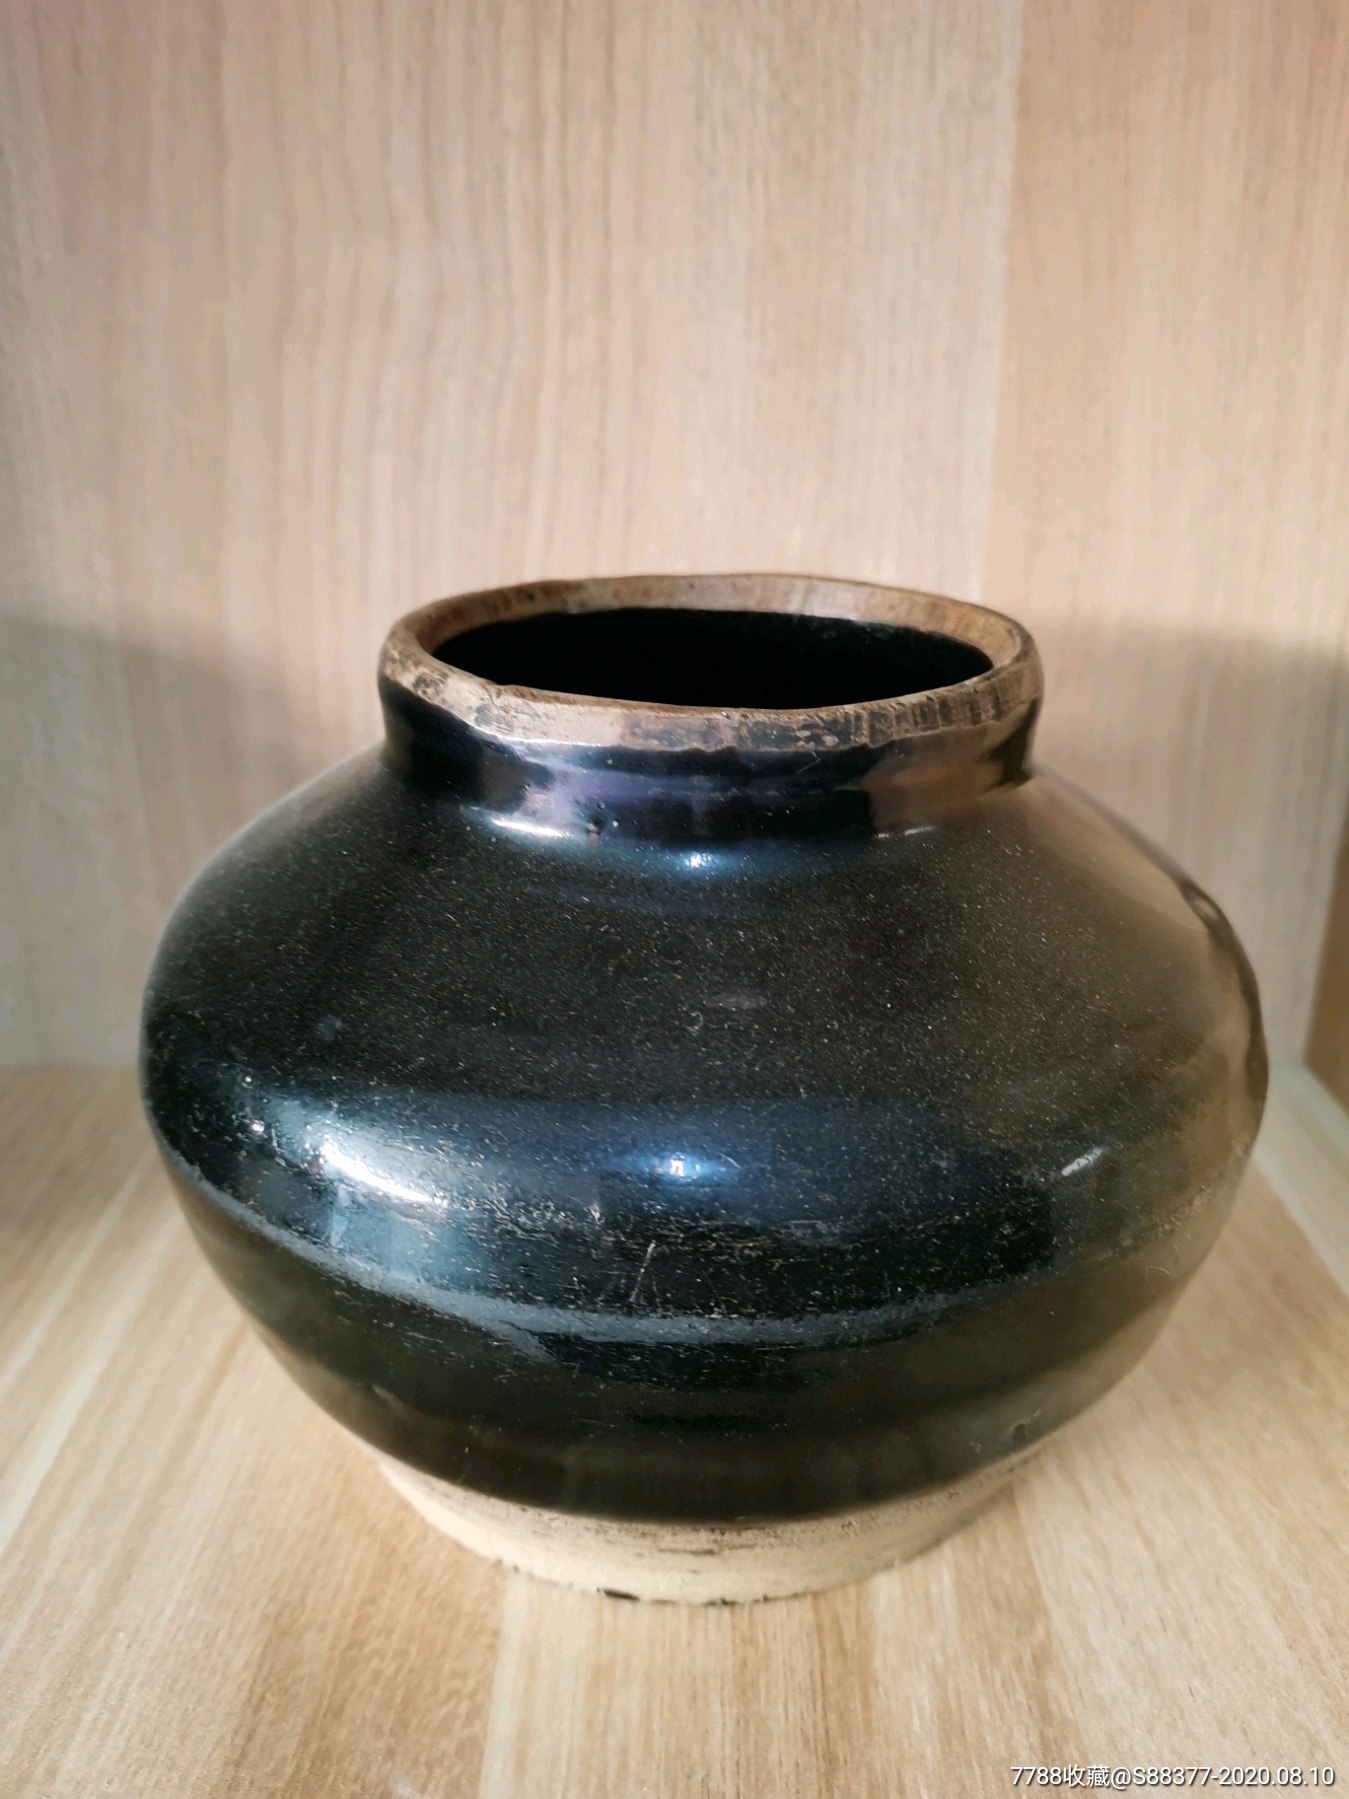 黑釉罐